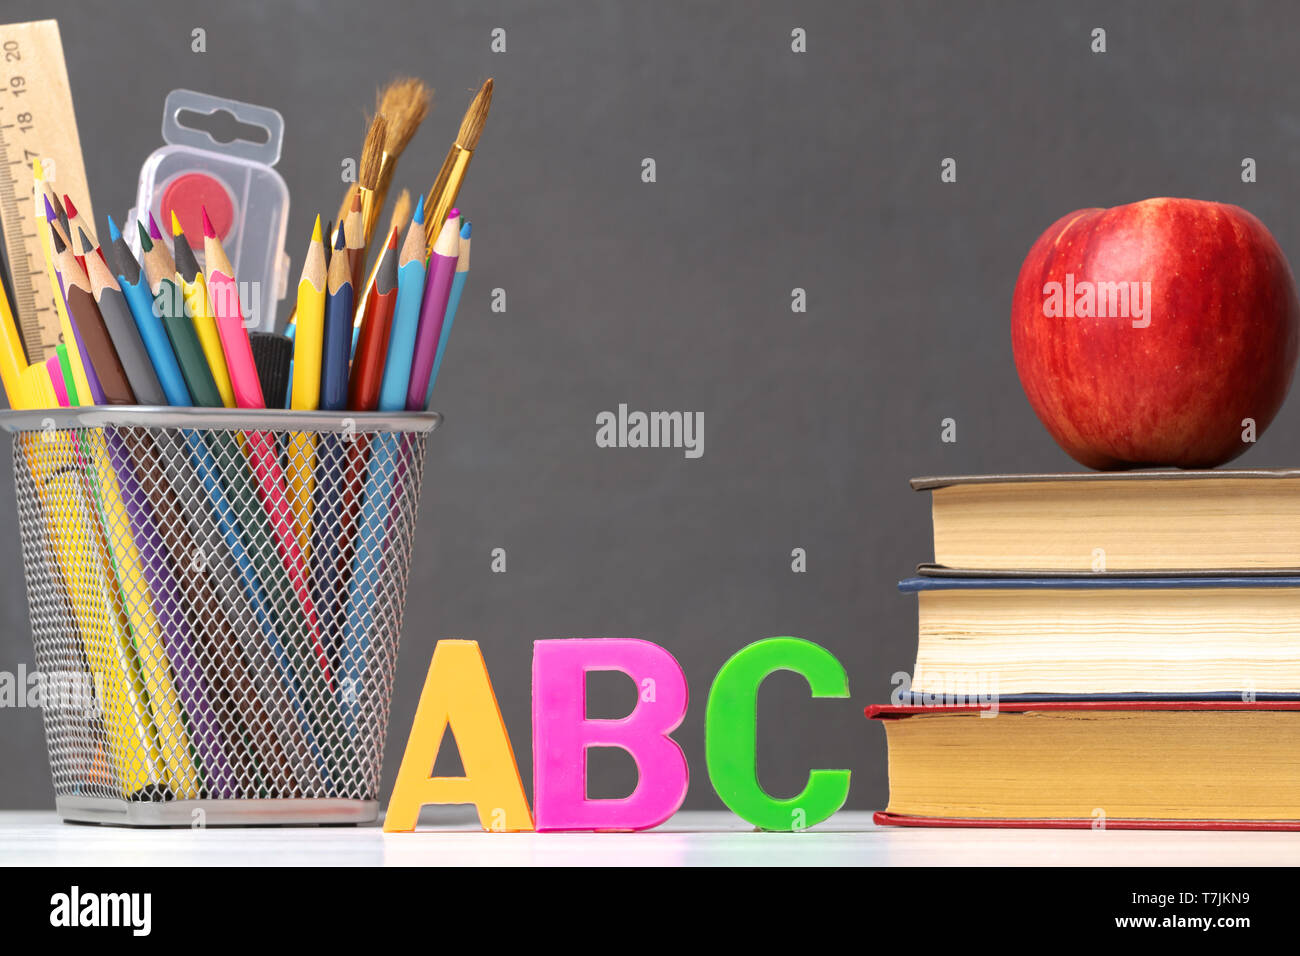 Eine Reihe von Schulmaterial. Ein Stapel von Lehrbüchern, ein Apfel, Buchstaben A, B, C, Stifte, Pinsel, Farben, gegen eine Schwarze Schiefertafel. Die co Stockfoto